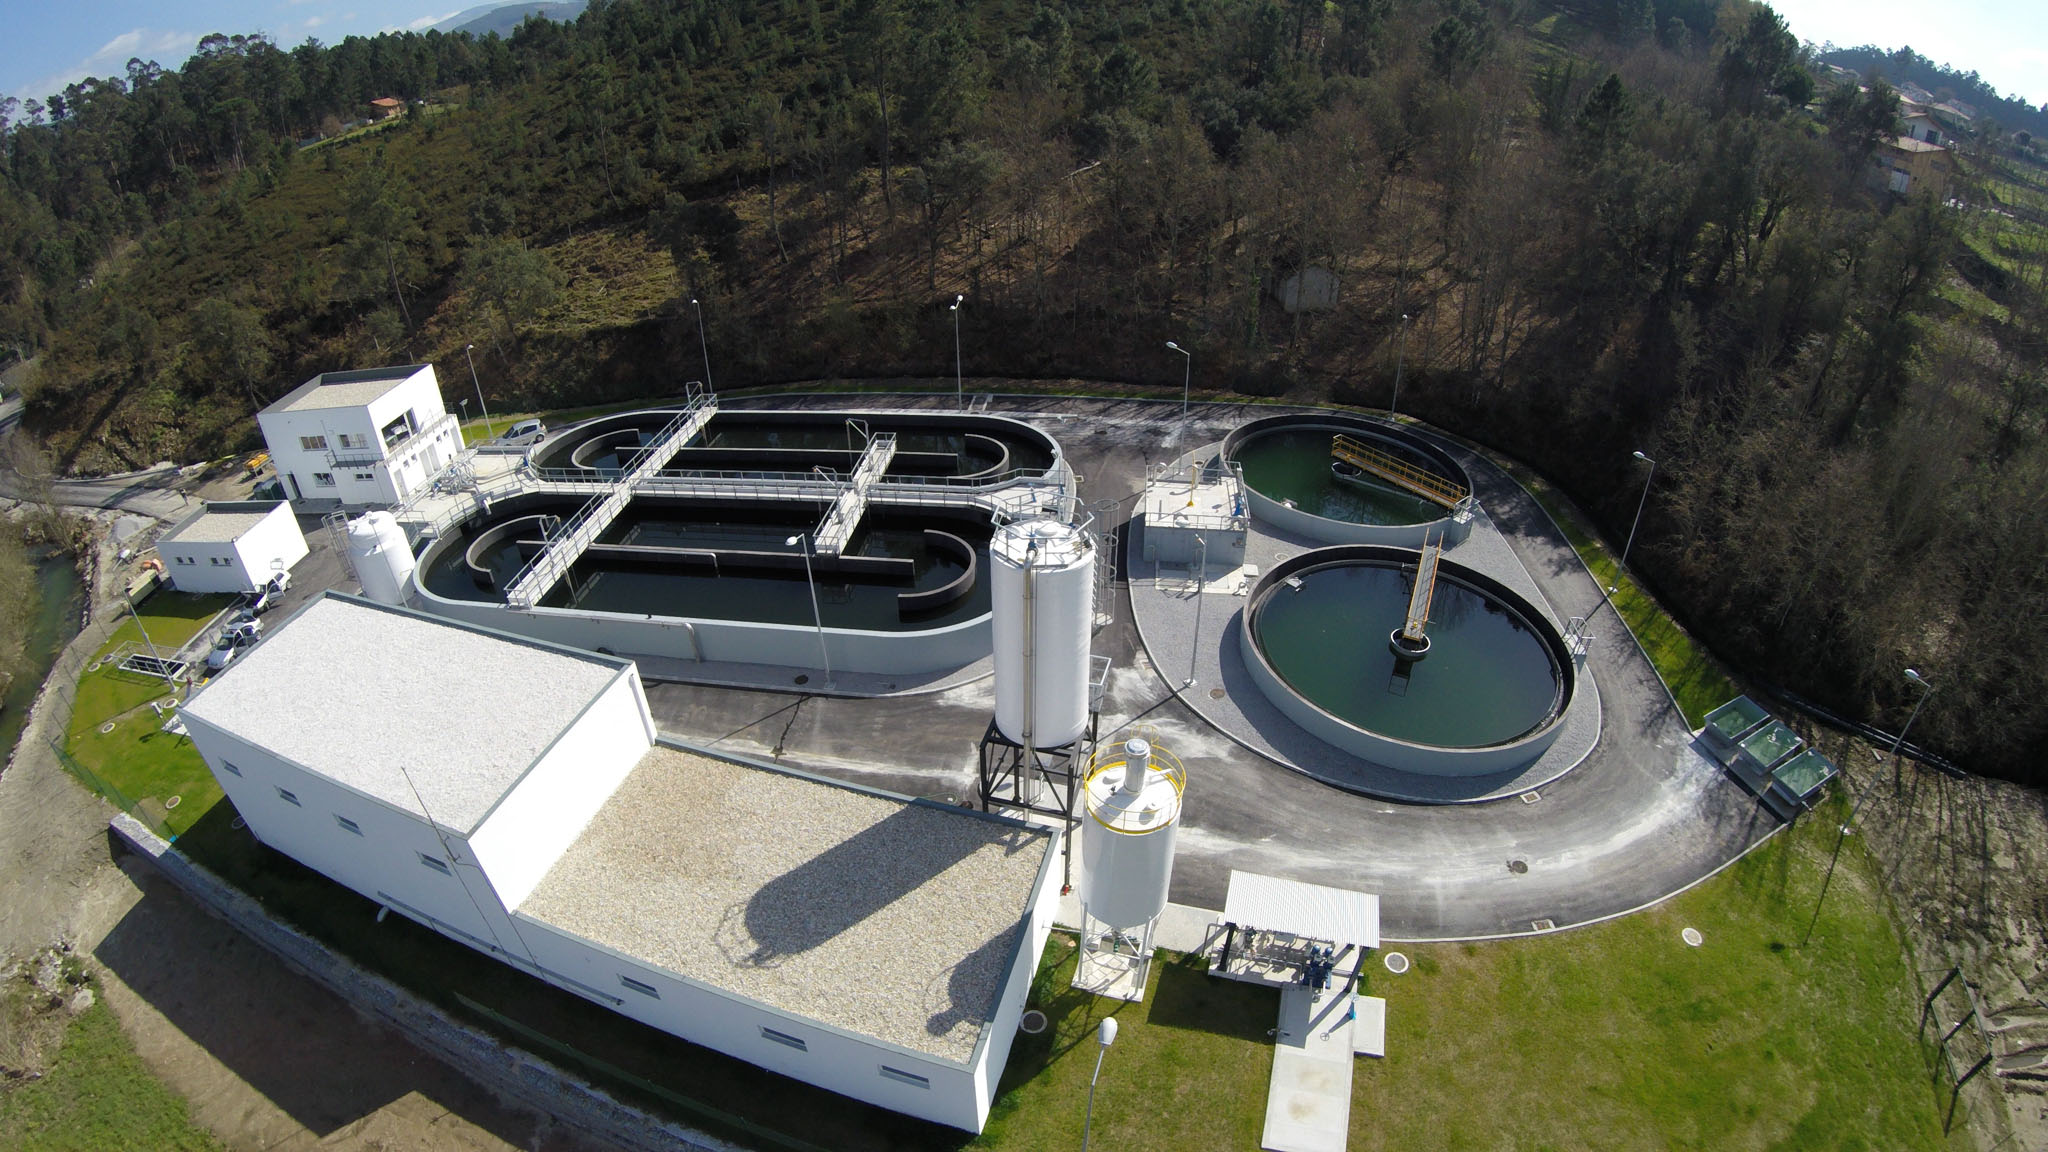 VIANA: Águas do Norte investe 800 mil euros em saneamento de freguesia em Viana do Castelo